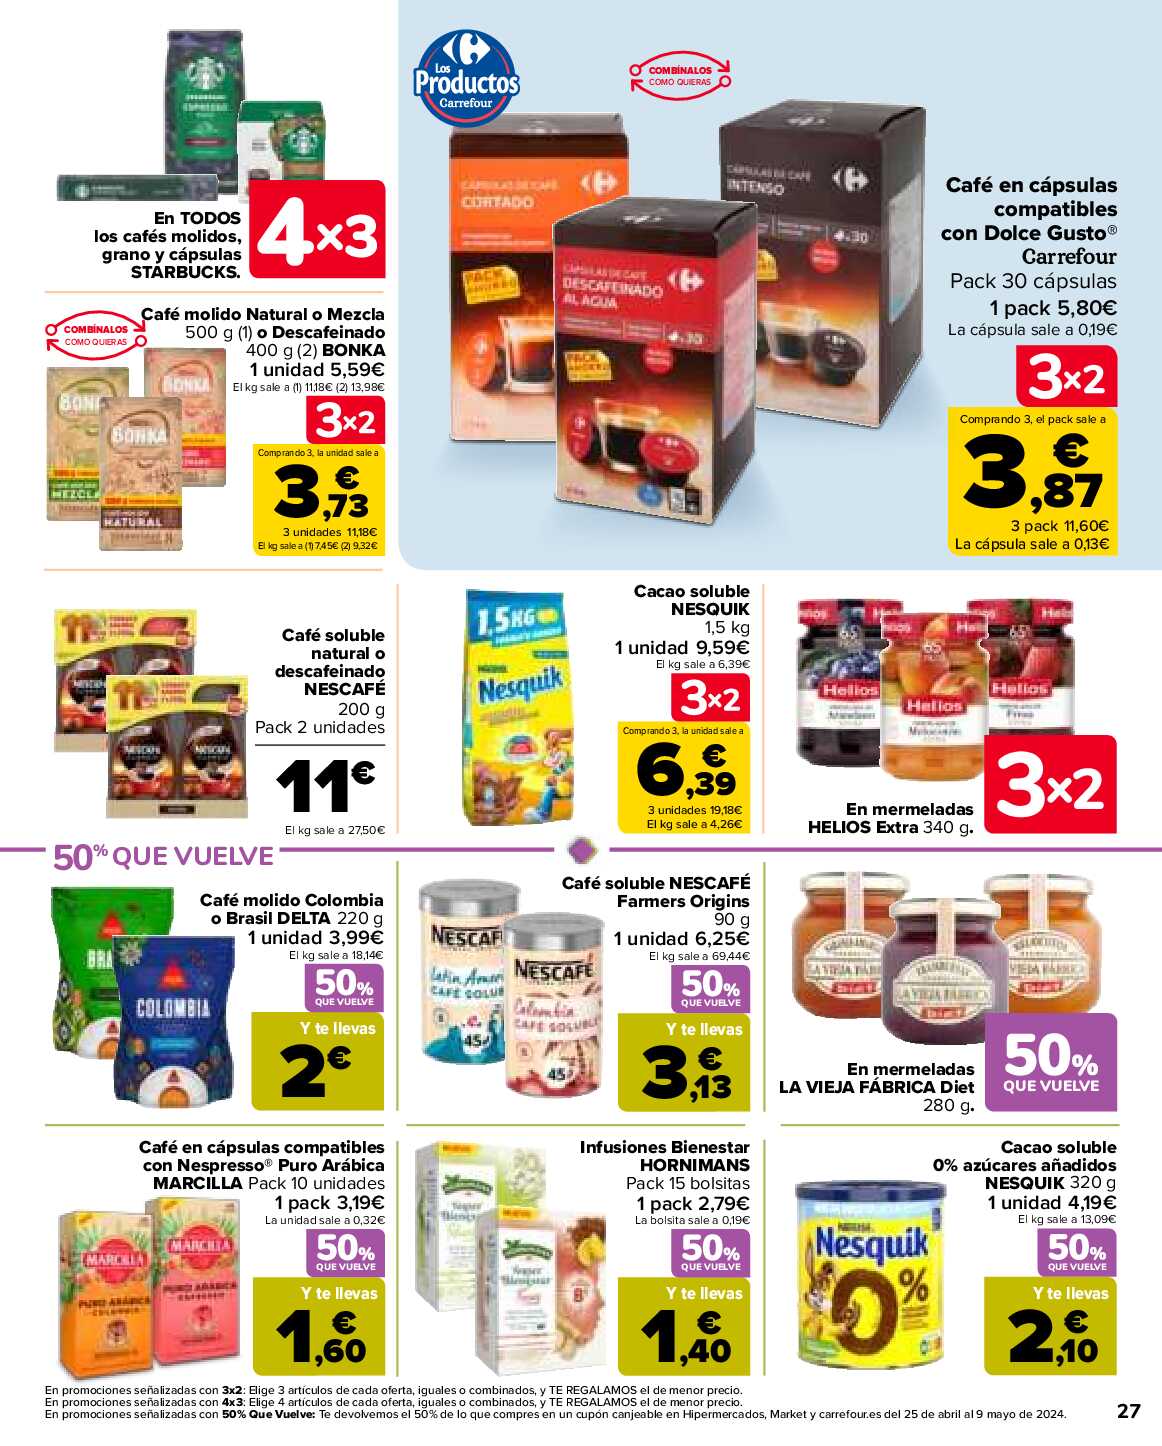 50% que vuelve Carrefour. Página 29